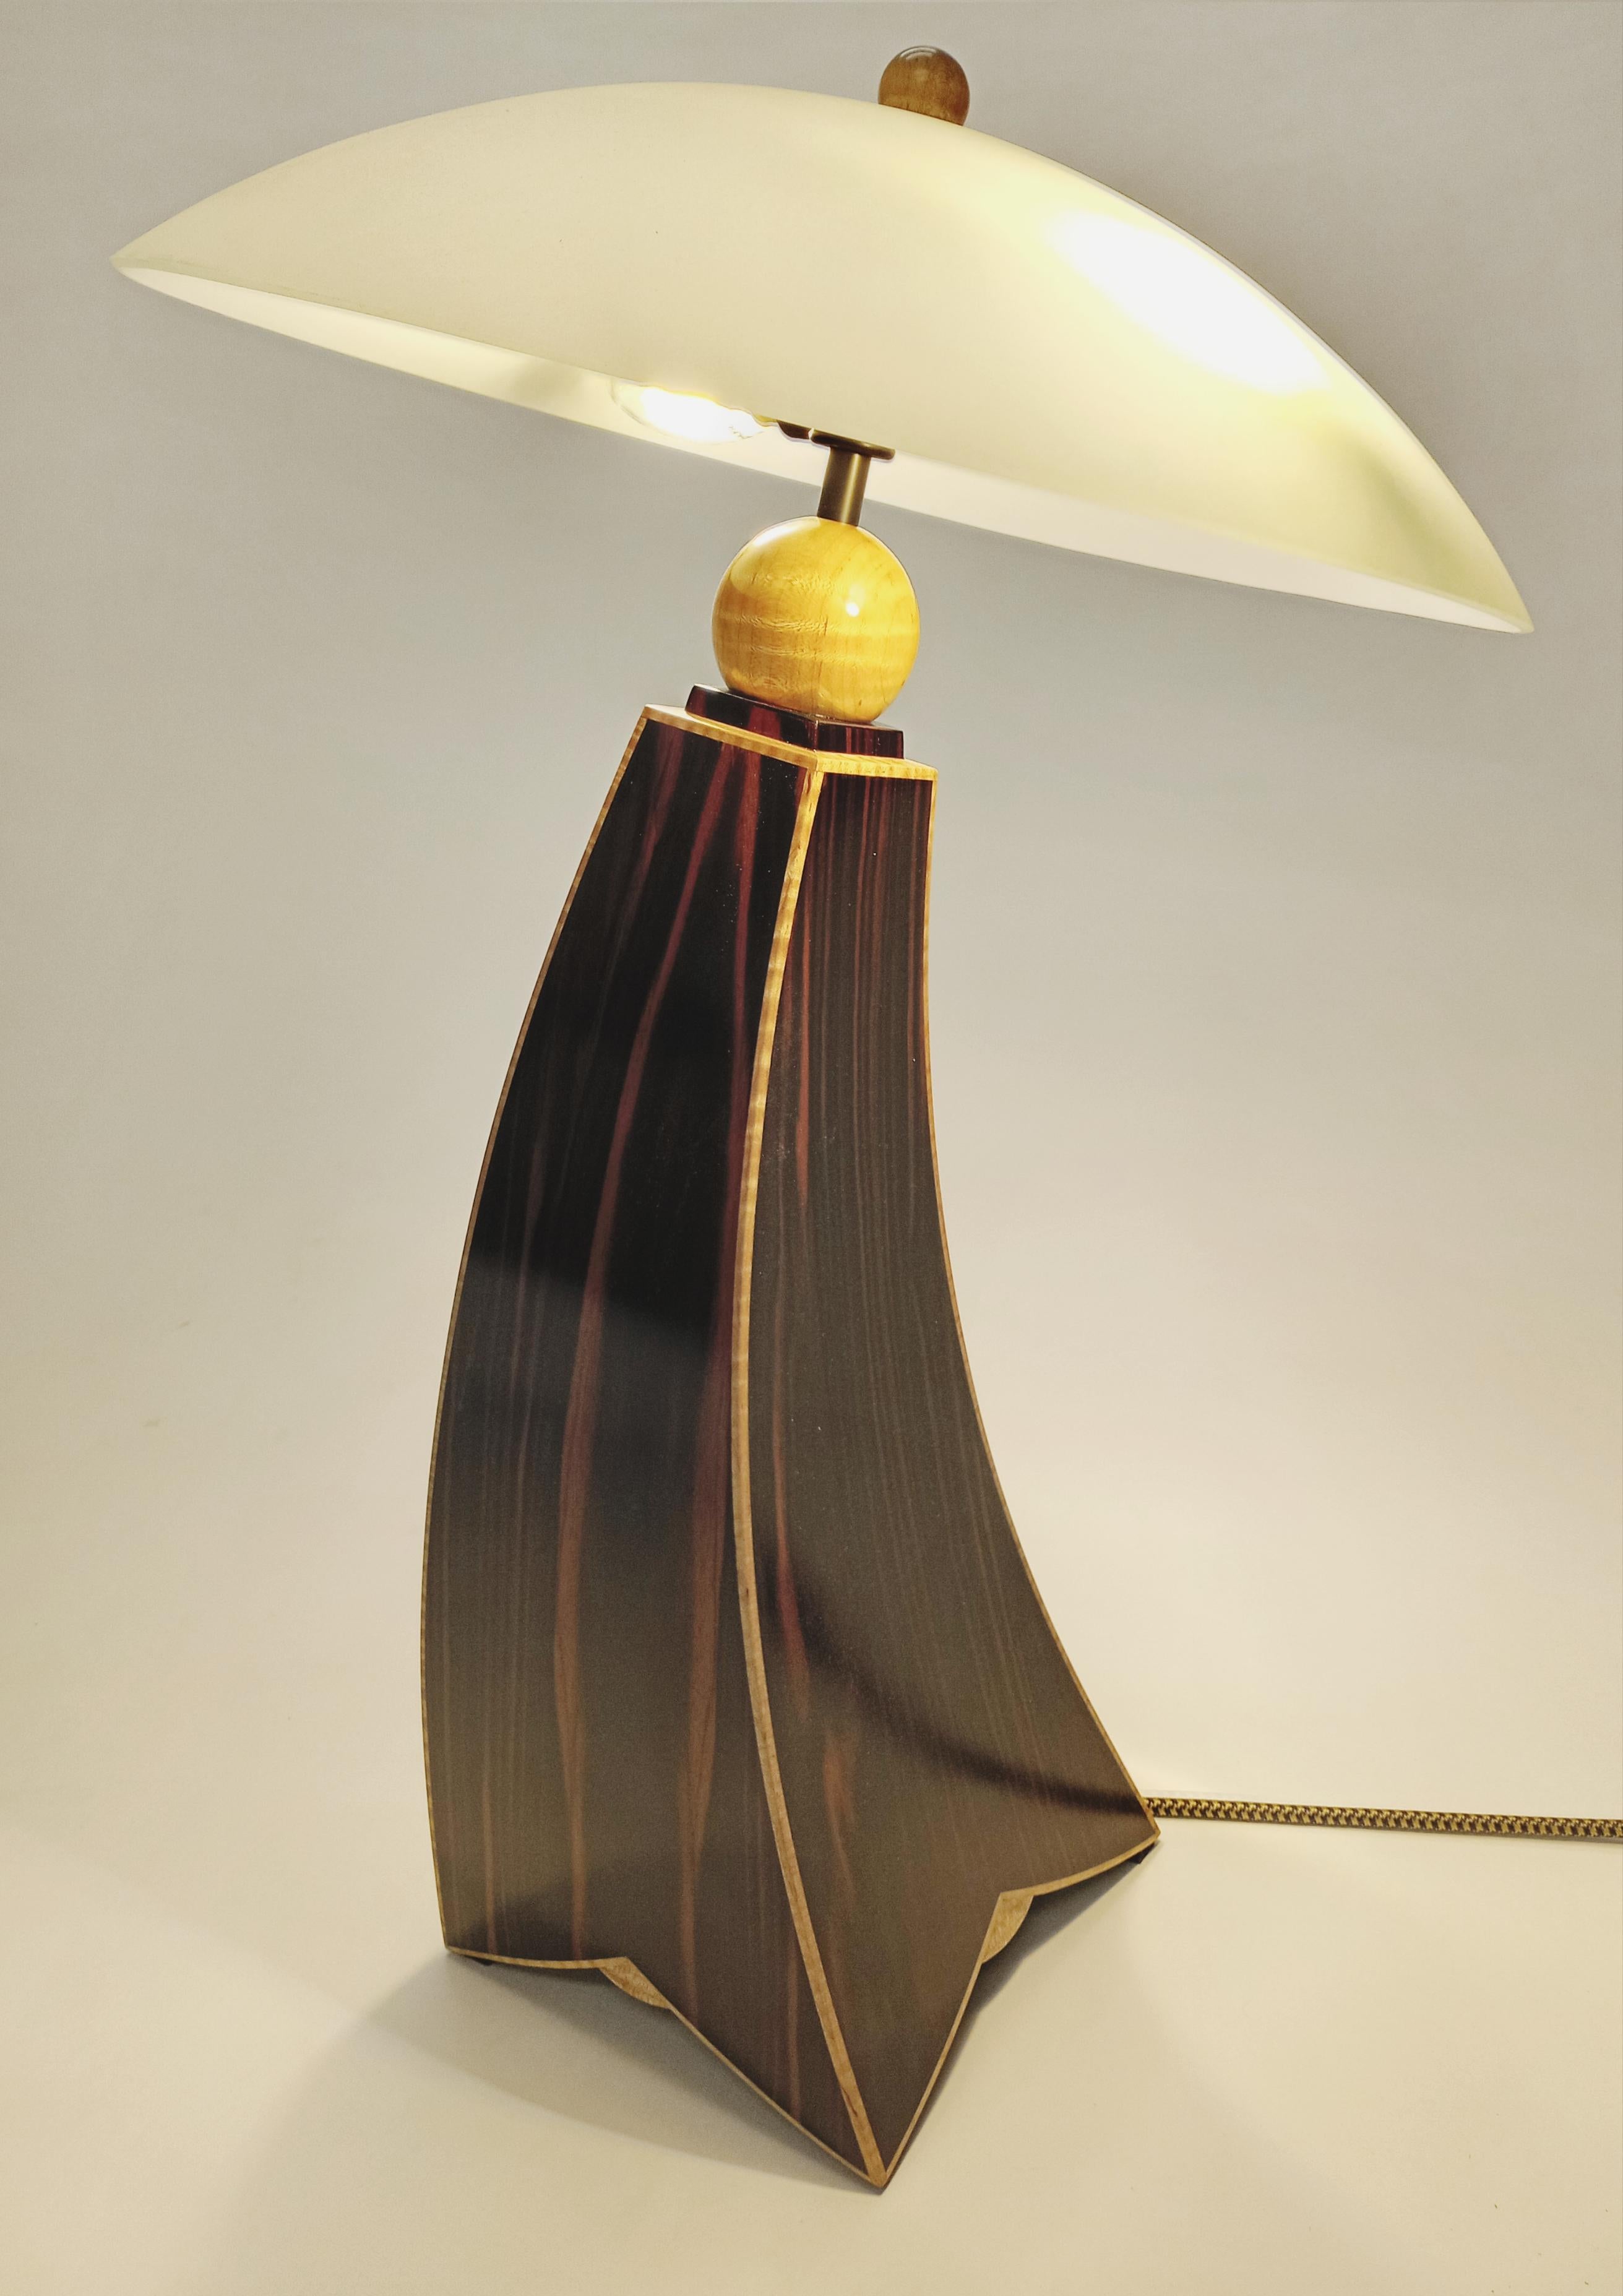 
Voici l'incarnation de la sophistication et de l'élégance intemporelle : Cosmo Barbaro Furnitures Jazz Inspired Lamp II, désormais disponible dans la superbe variante en ébène de Makassar avec incrustation d'érable, en exclusivité sur 1st Dibs.